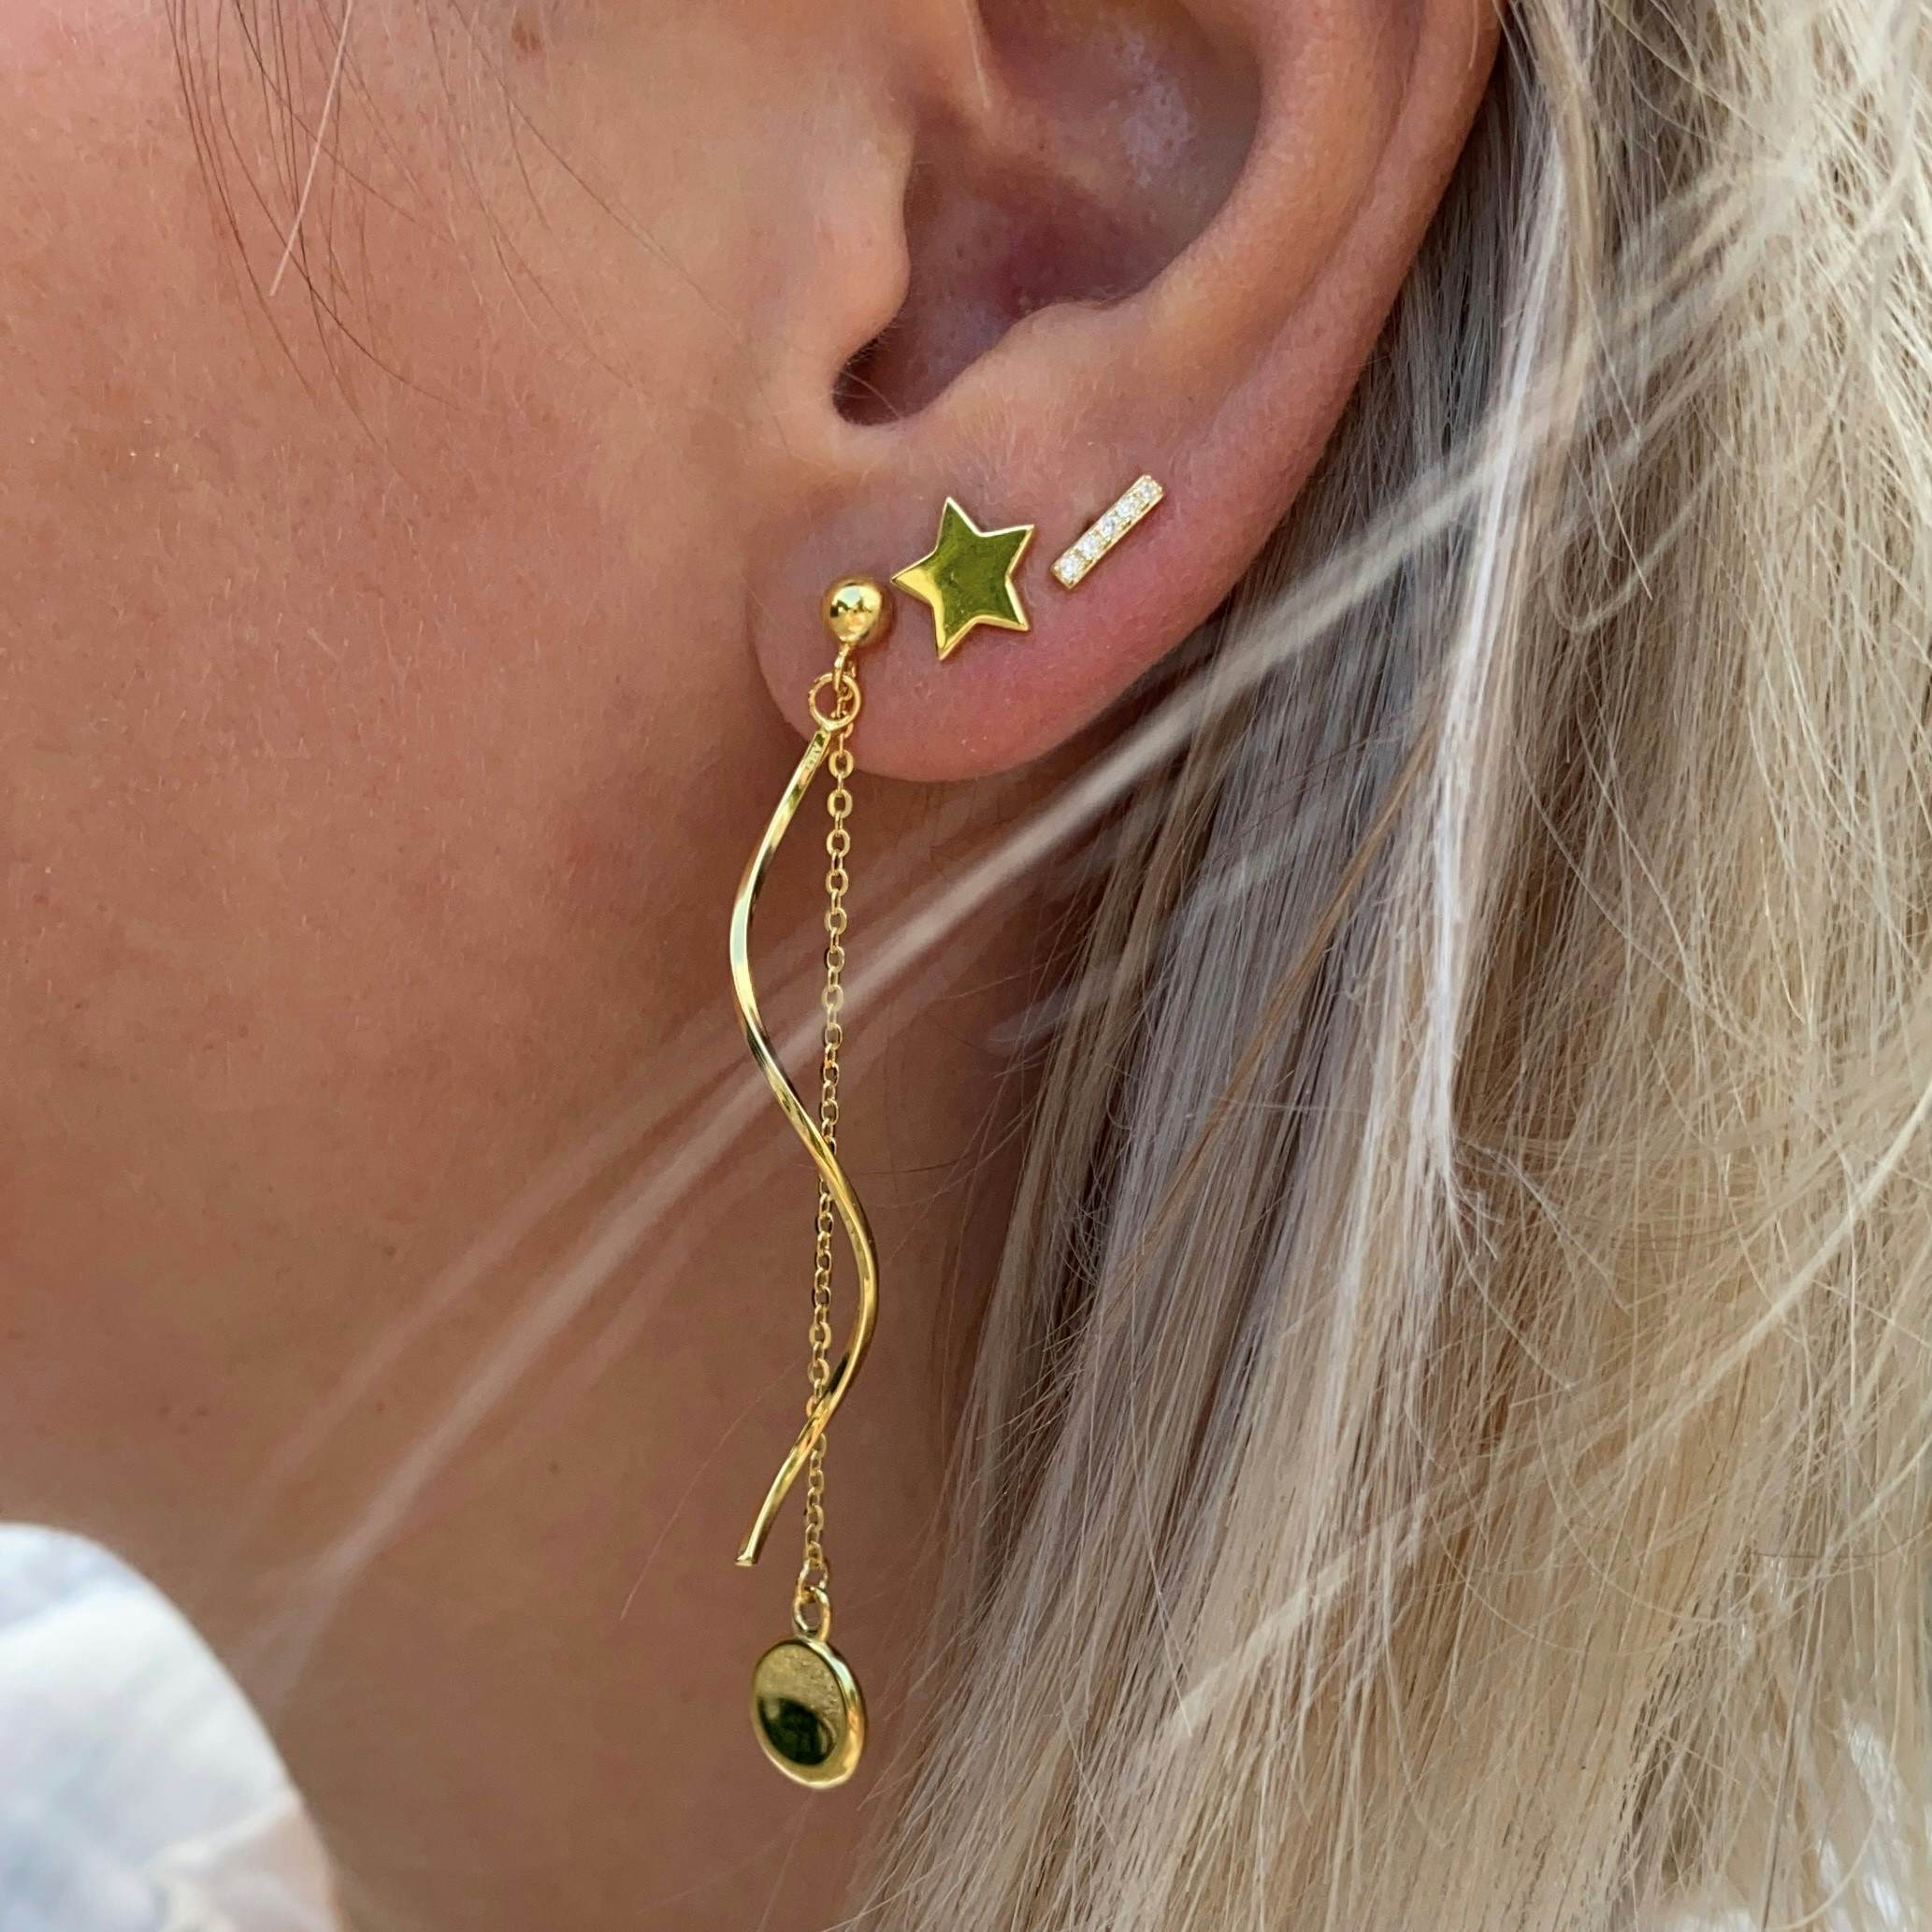 Anne earrings from A-Hjort in Silver Sterling 925